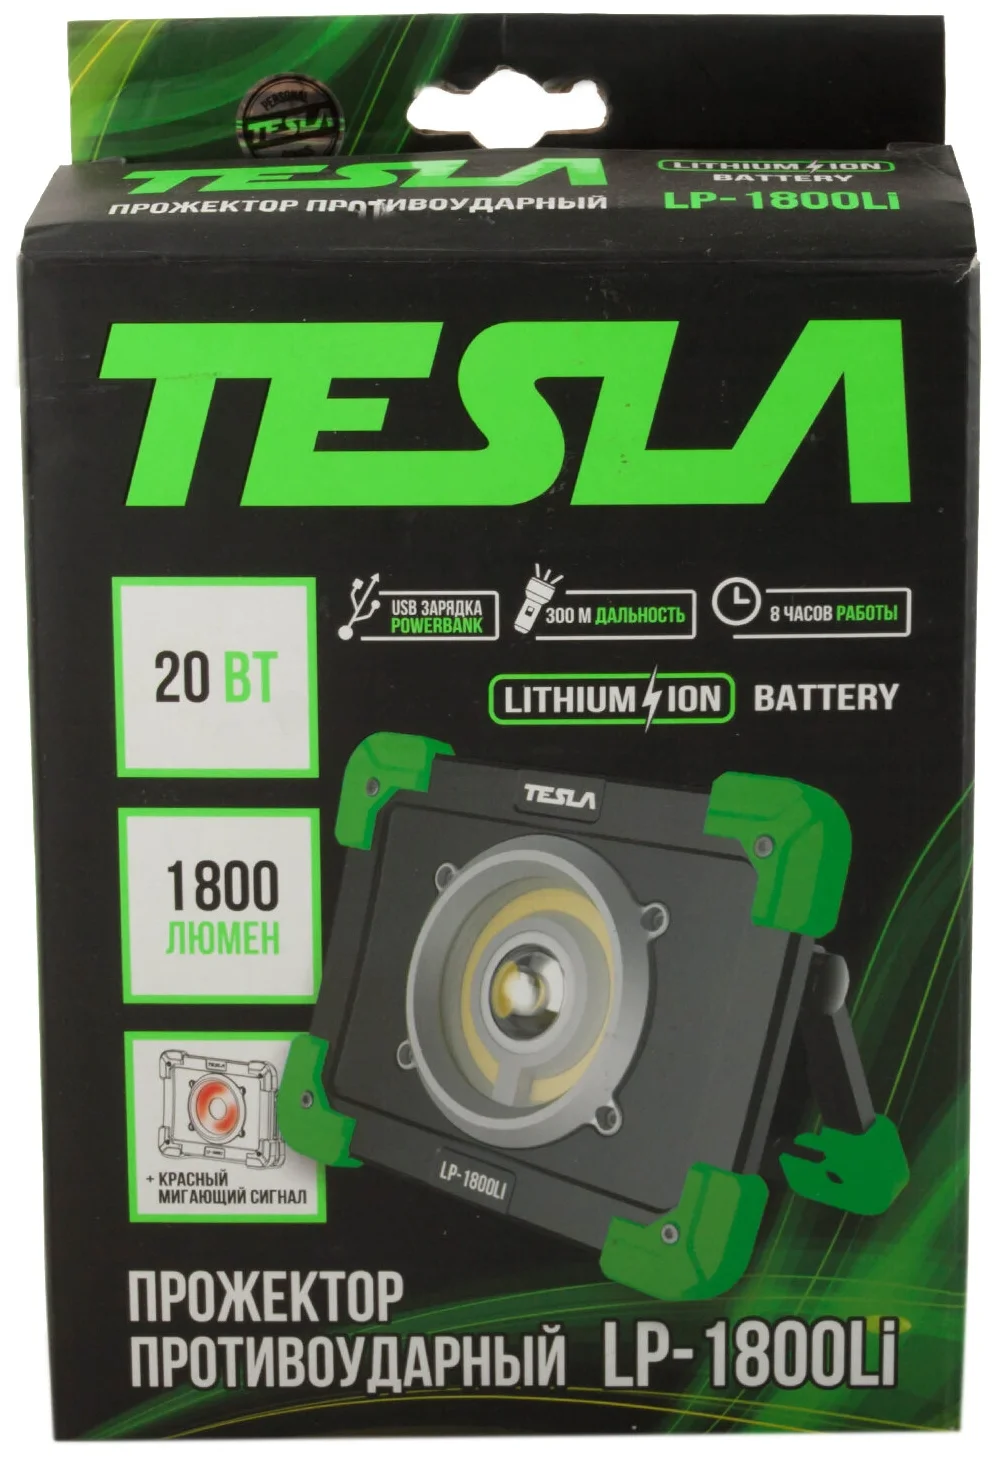 Tesla LP-1800Li - зарядка: от сети 220 В, от USB